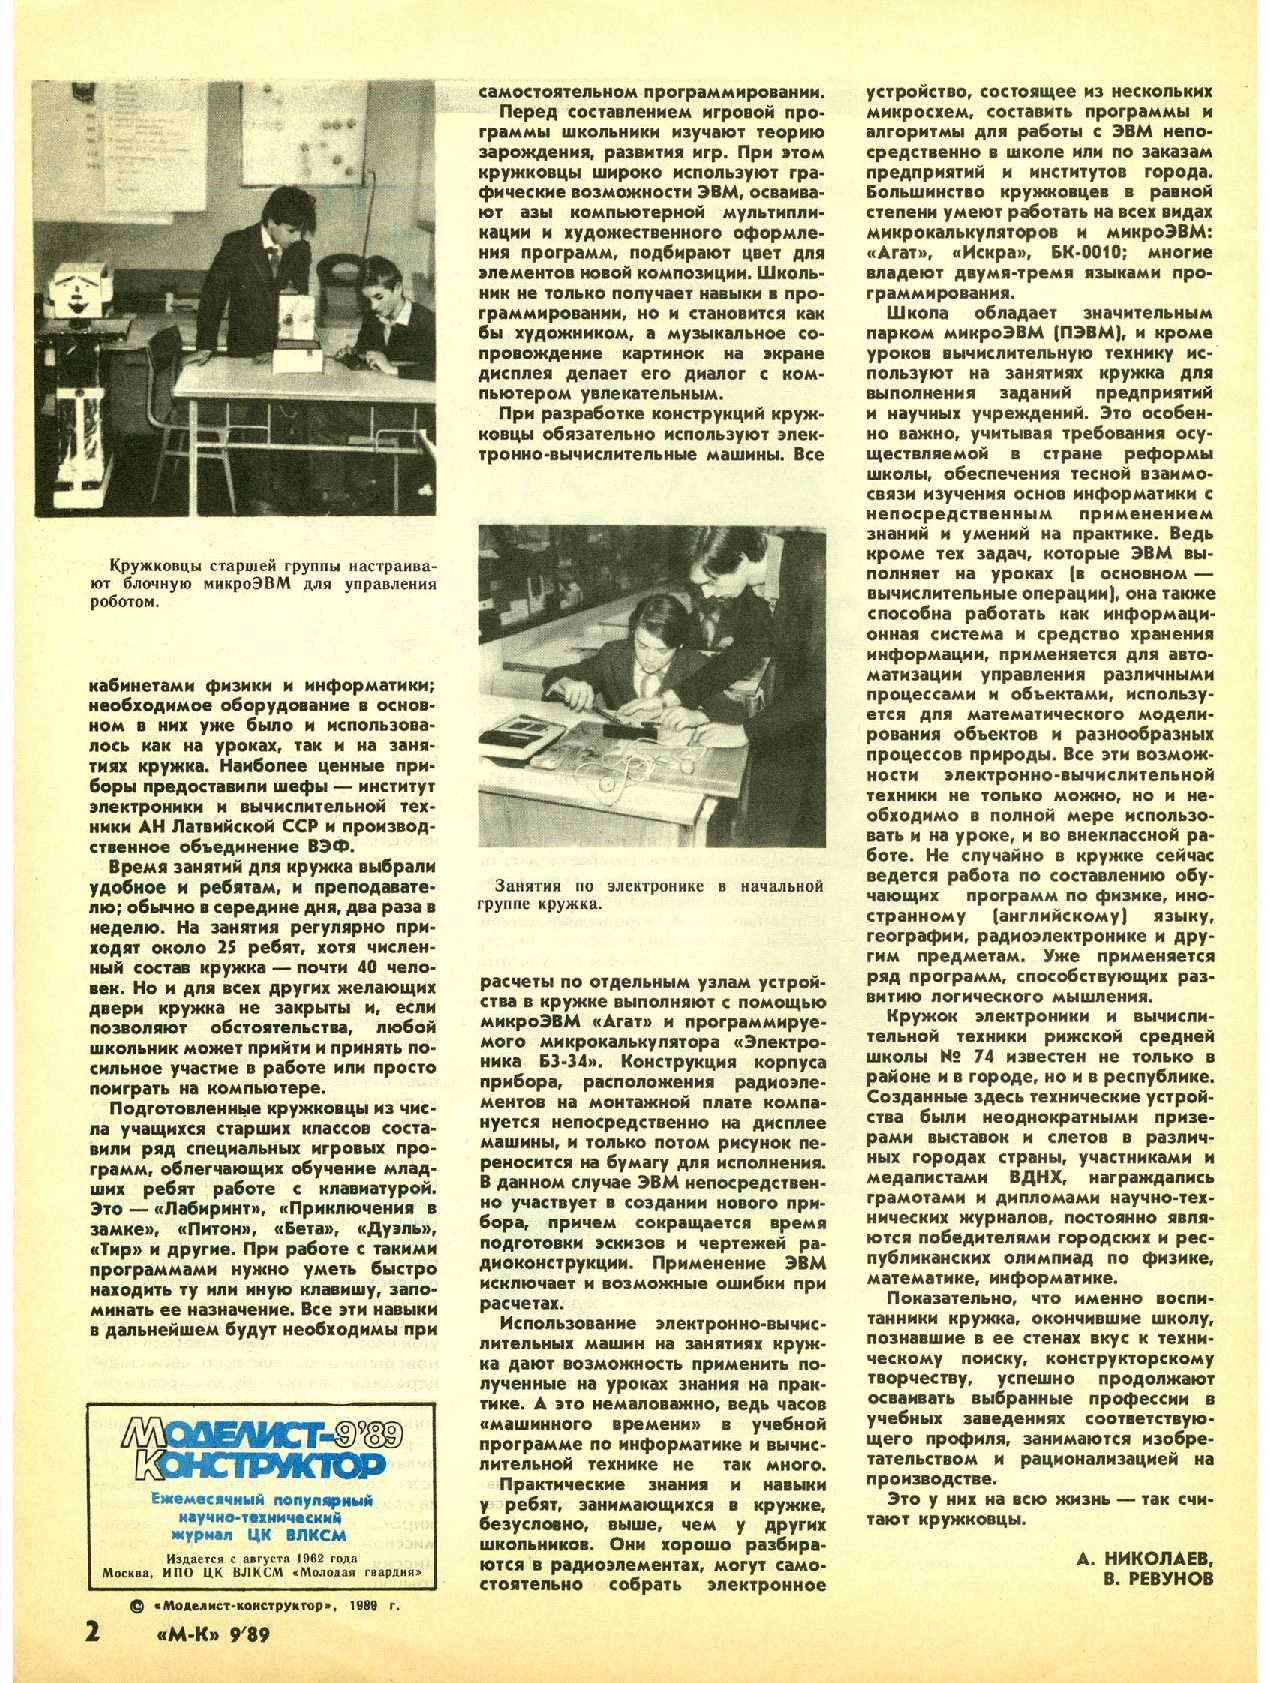 МК 9, 1989, 2 c.